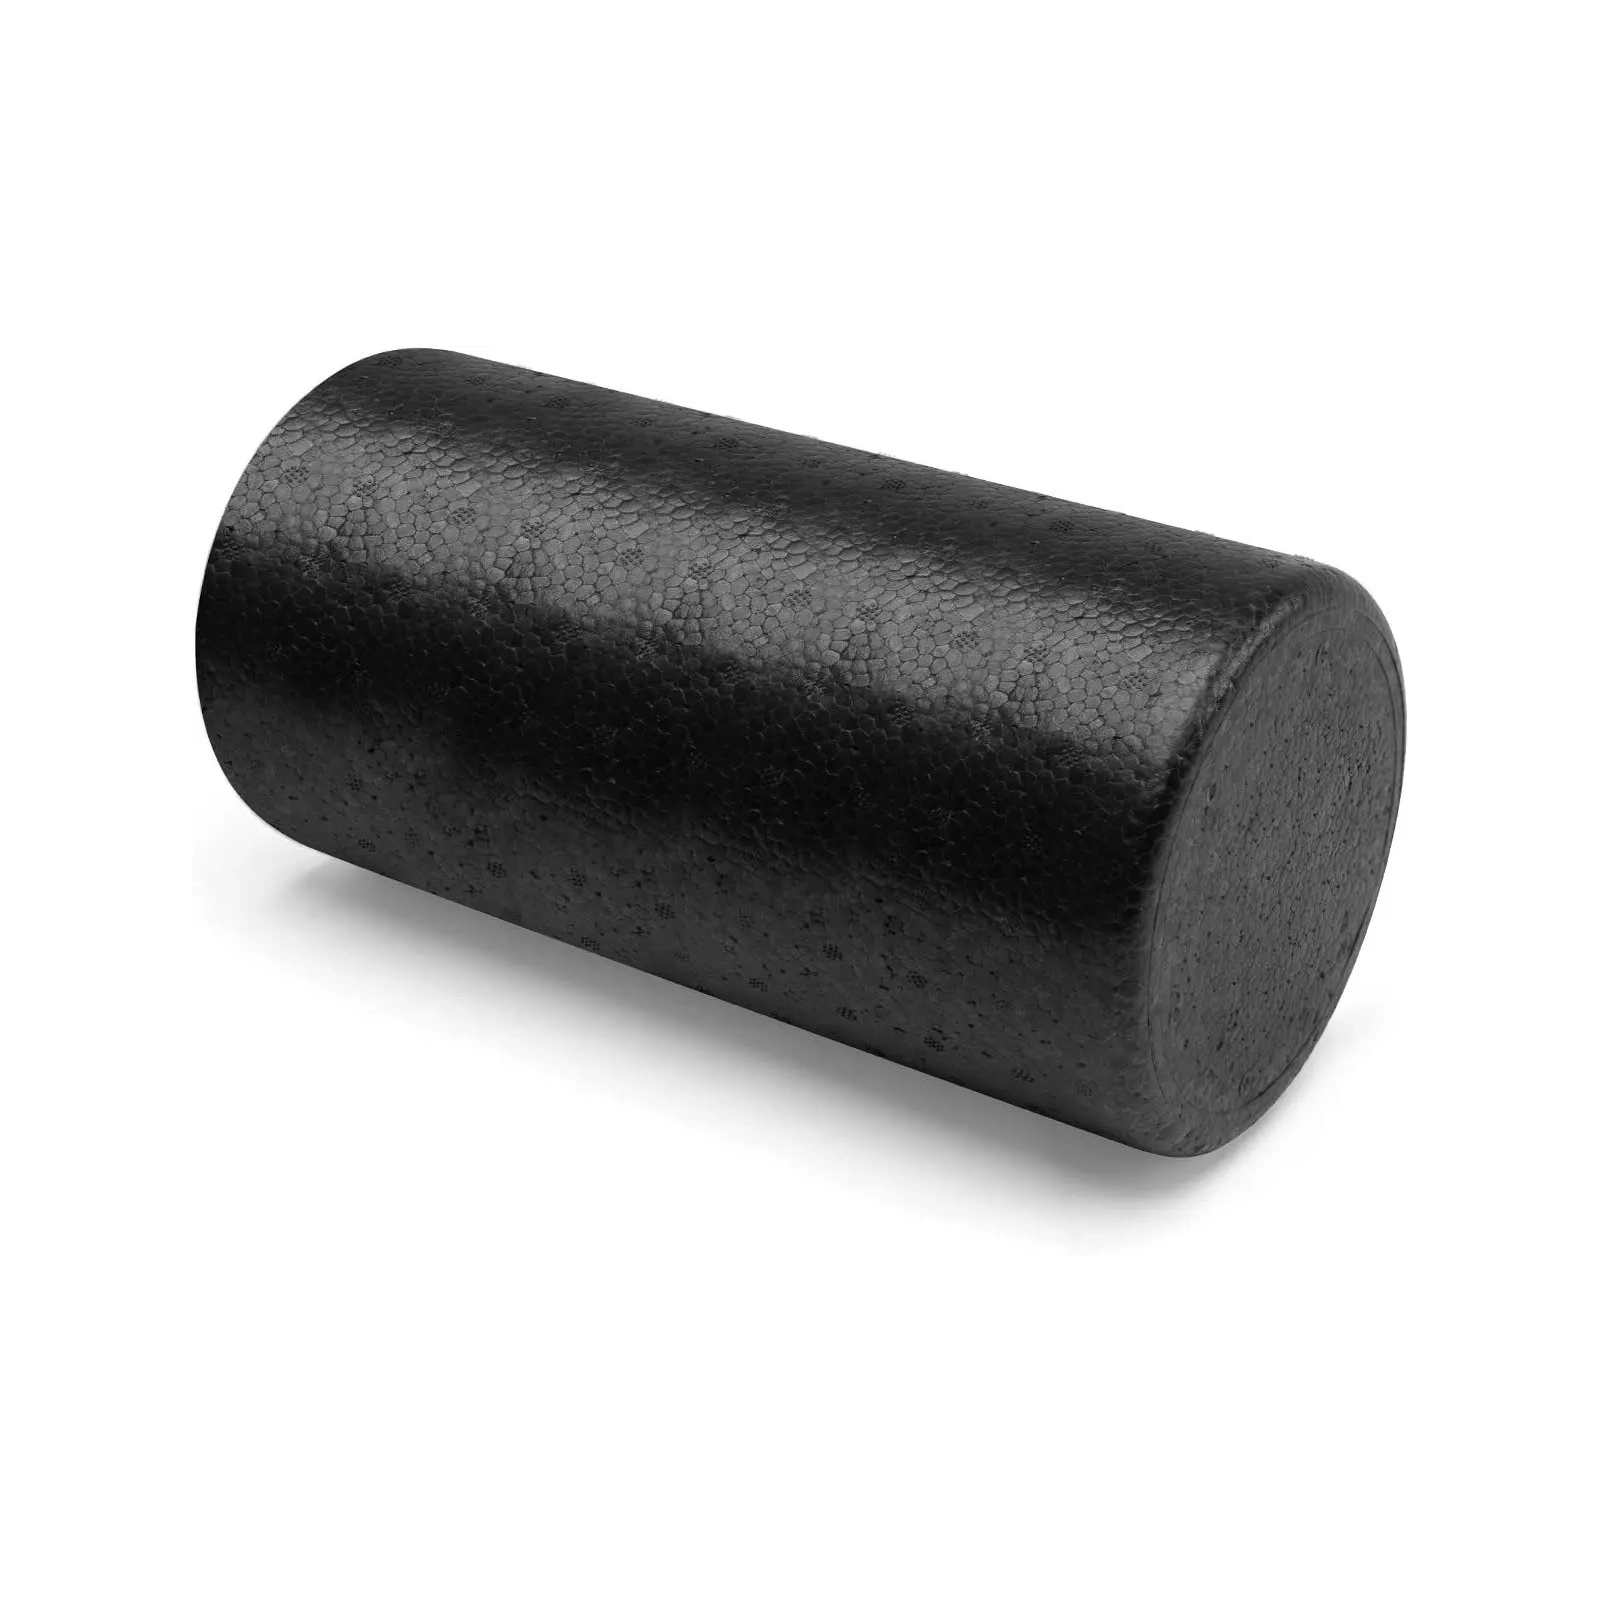 Масажный ролик U-Powex гладкий UP_1008 EPP foam roller 45х15cm (UP_1008_epp_(45cm))